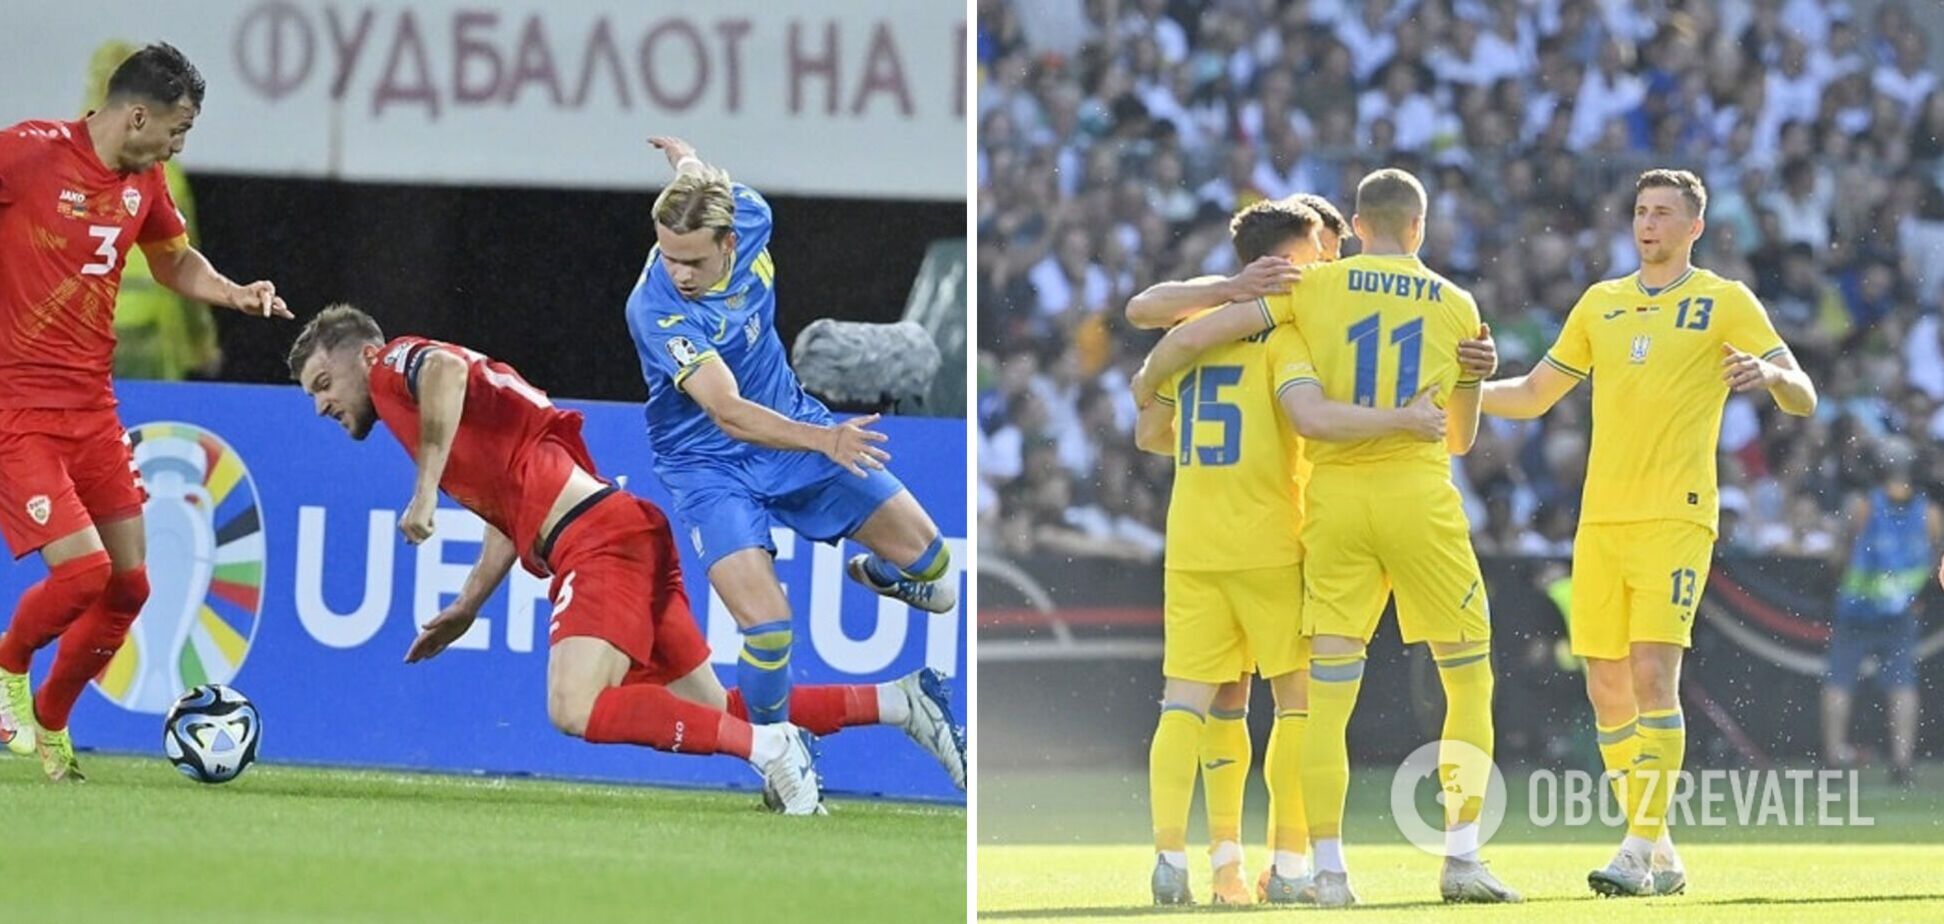 УАФ зробила офіційну заяву щодо зливу складу збірної України на матч із Боснією